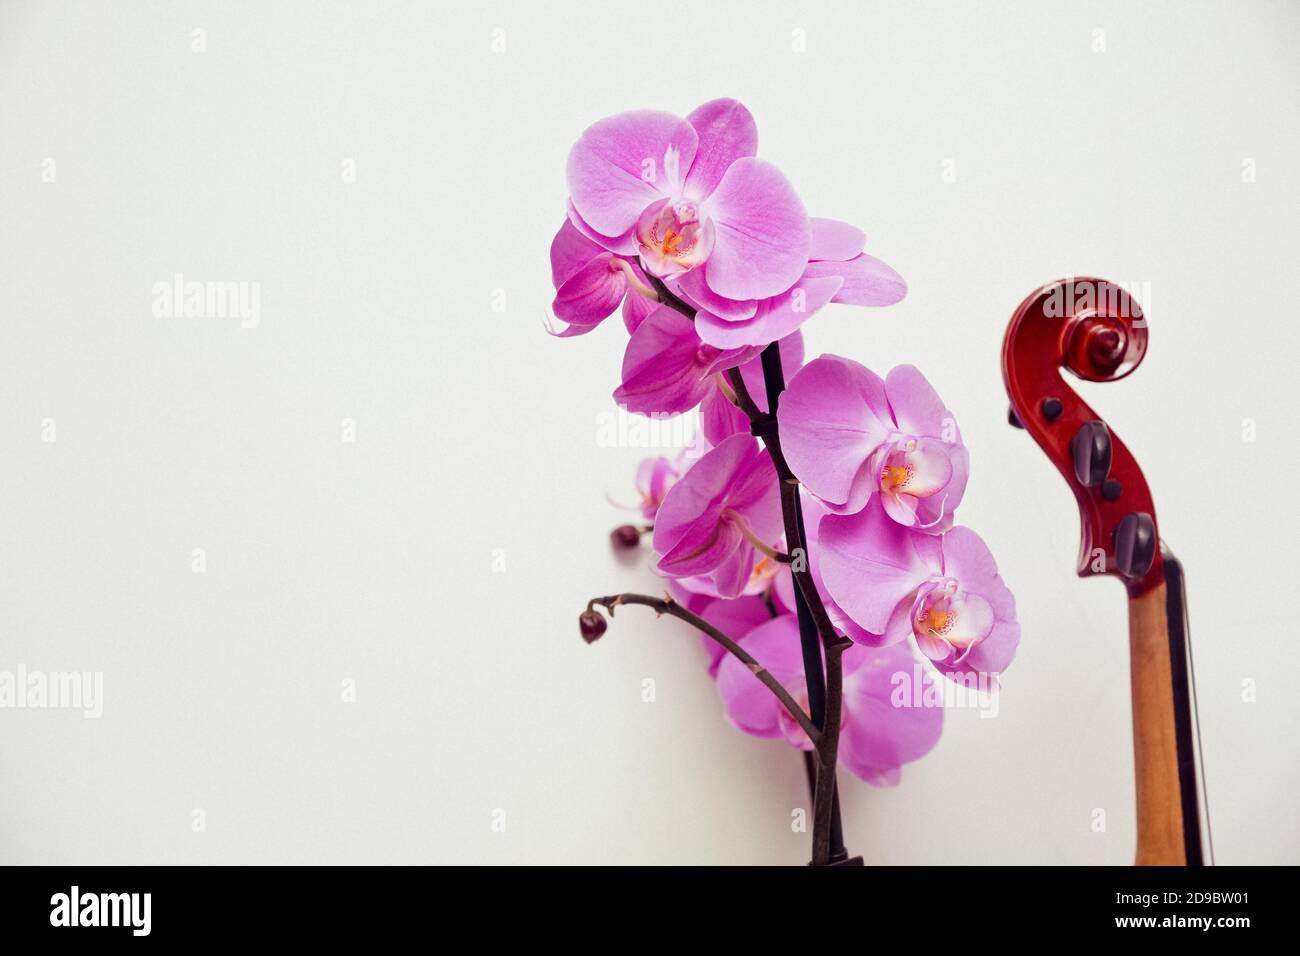 Fretboard de violon et fleur d'orchidée courbant sur fond blanc. Composition abstraite combinant la beauté de la nature et de l'art Banque D'Images